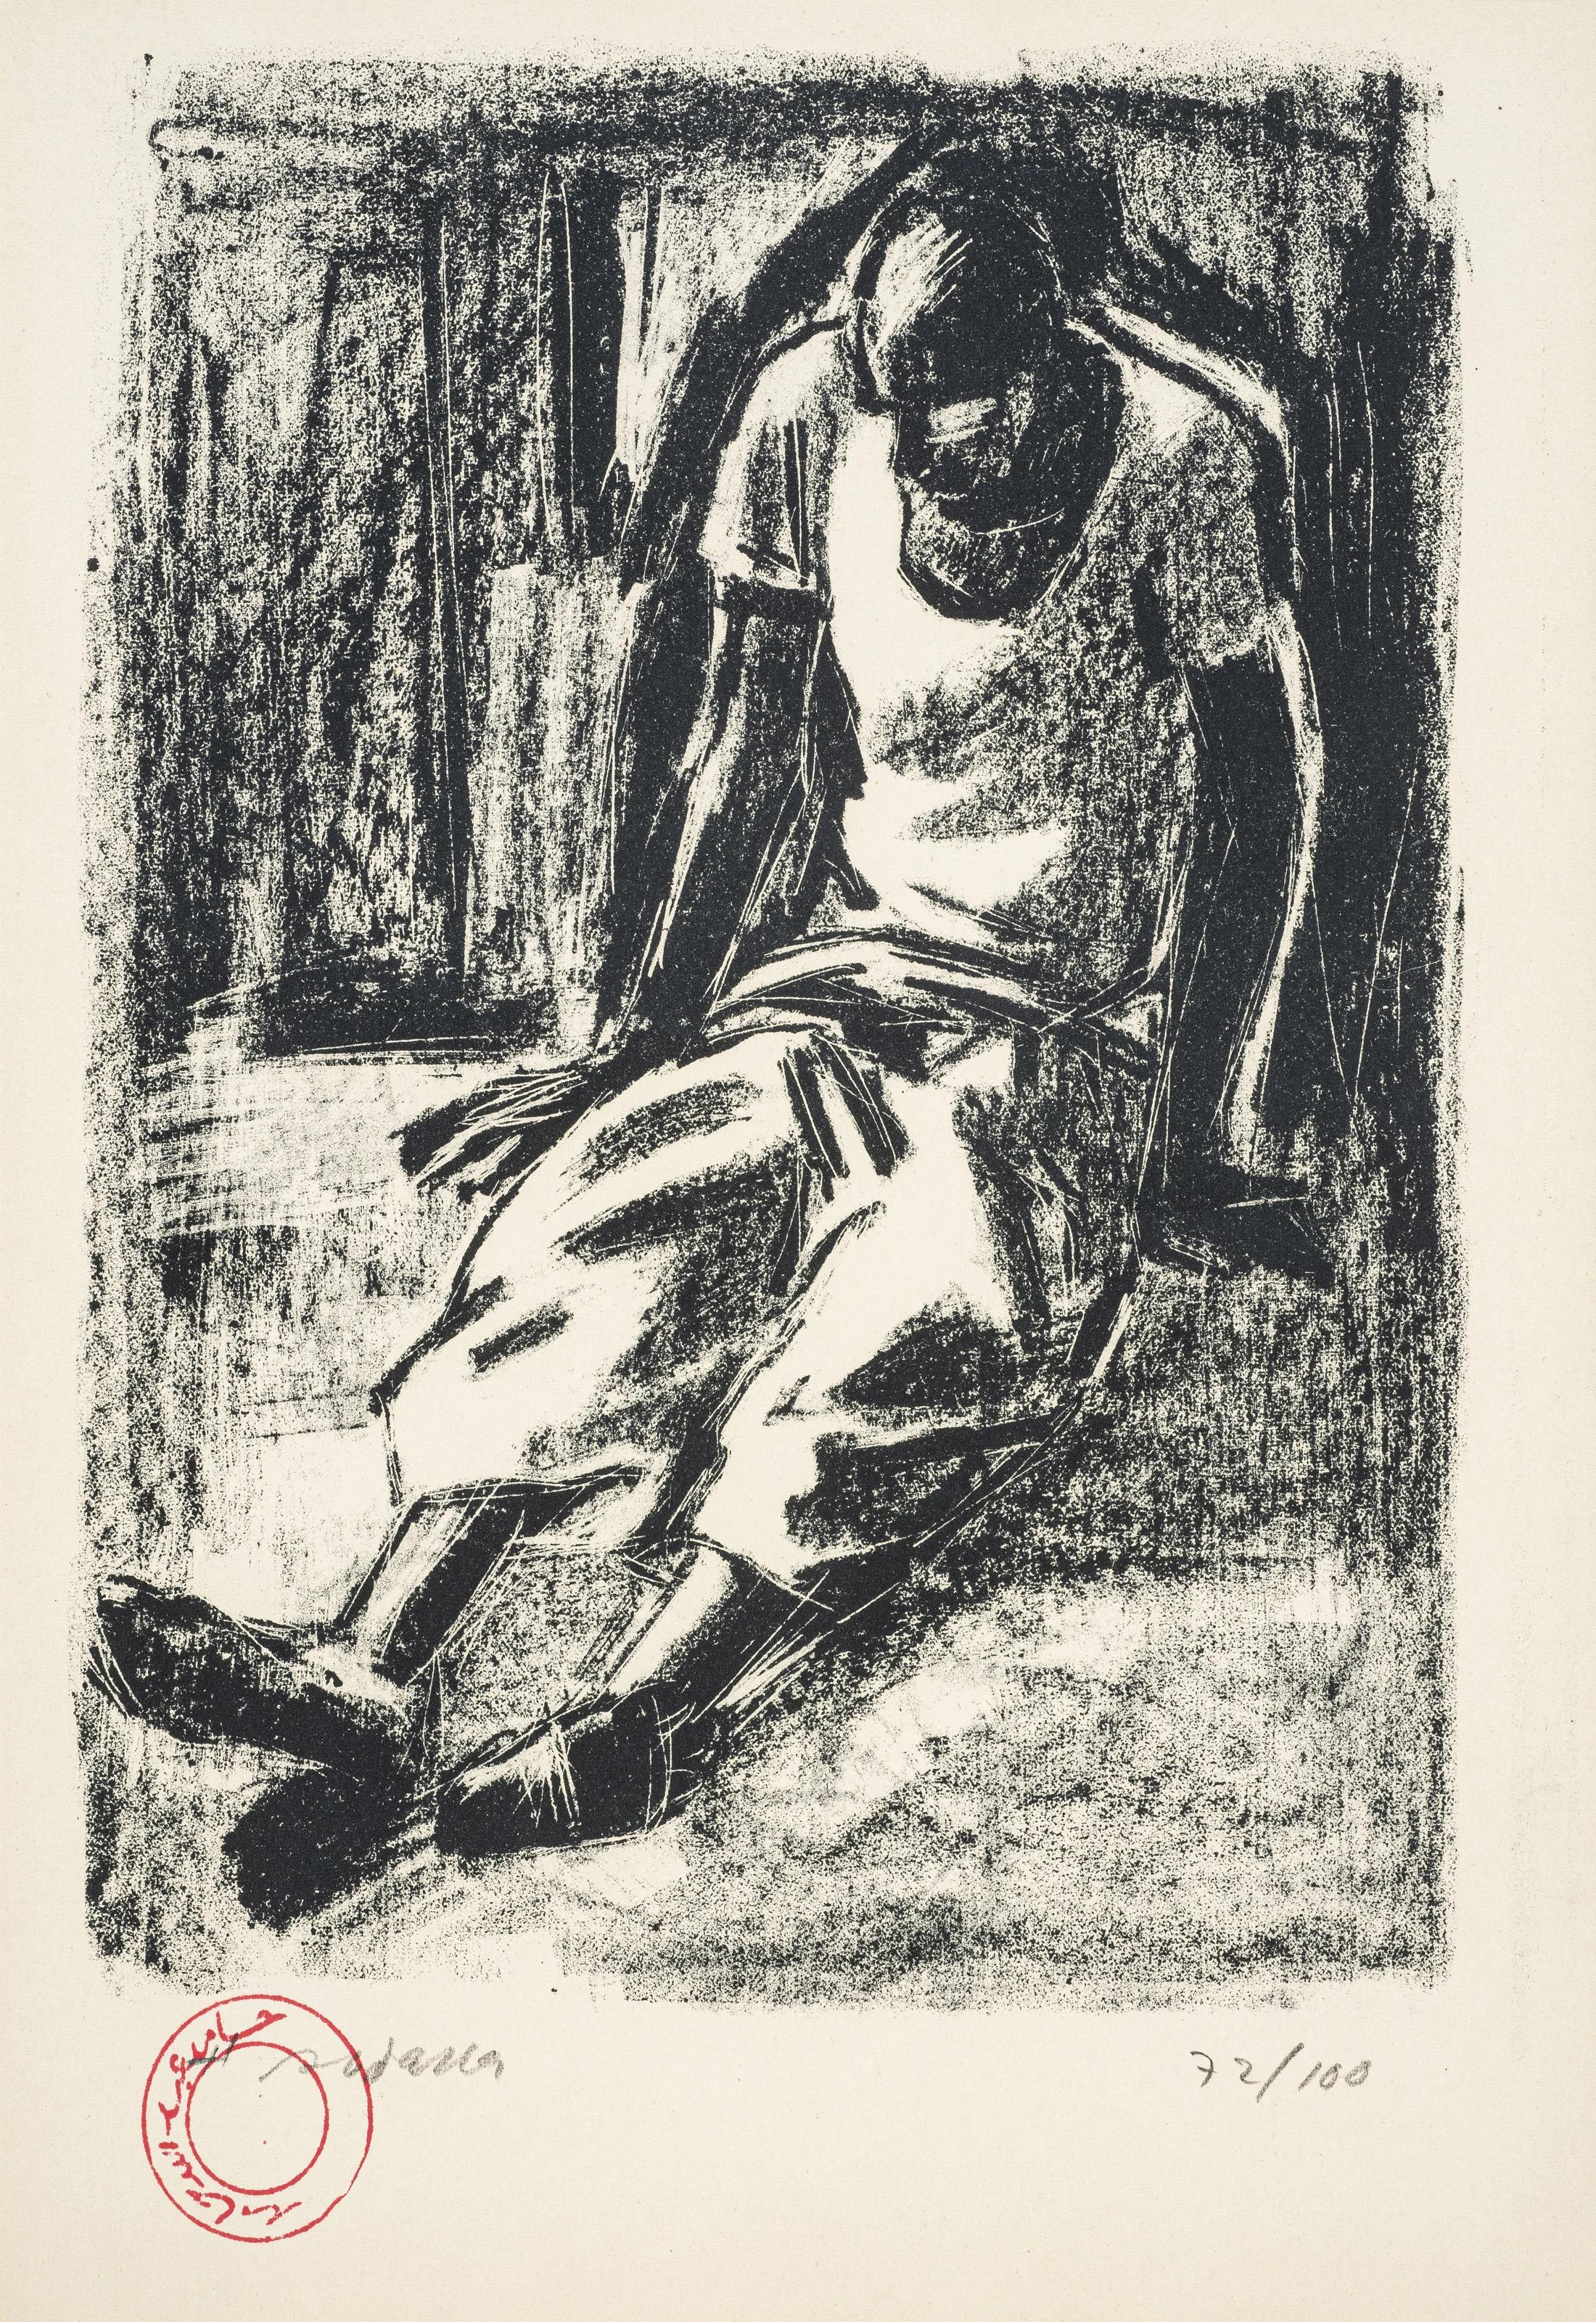 „Street Boy“ signierte Lithographie 12" x 8" Zoll Auflage 72/100 von Hamed Abdalla

Hamed Abdallah (1917-1985), ein Wegbereiter des ägyptischen und arabischen Modernismus, ging in seiner künstlerischen Arbeit noch einen Schritt weiter, indem er das,